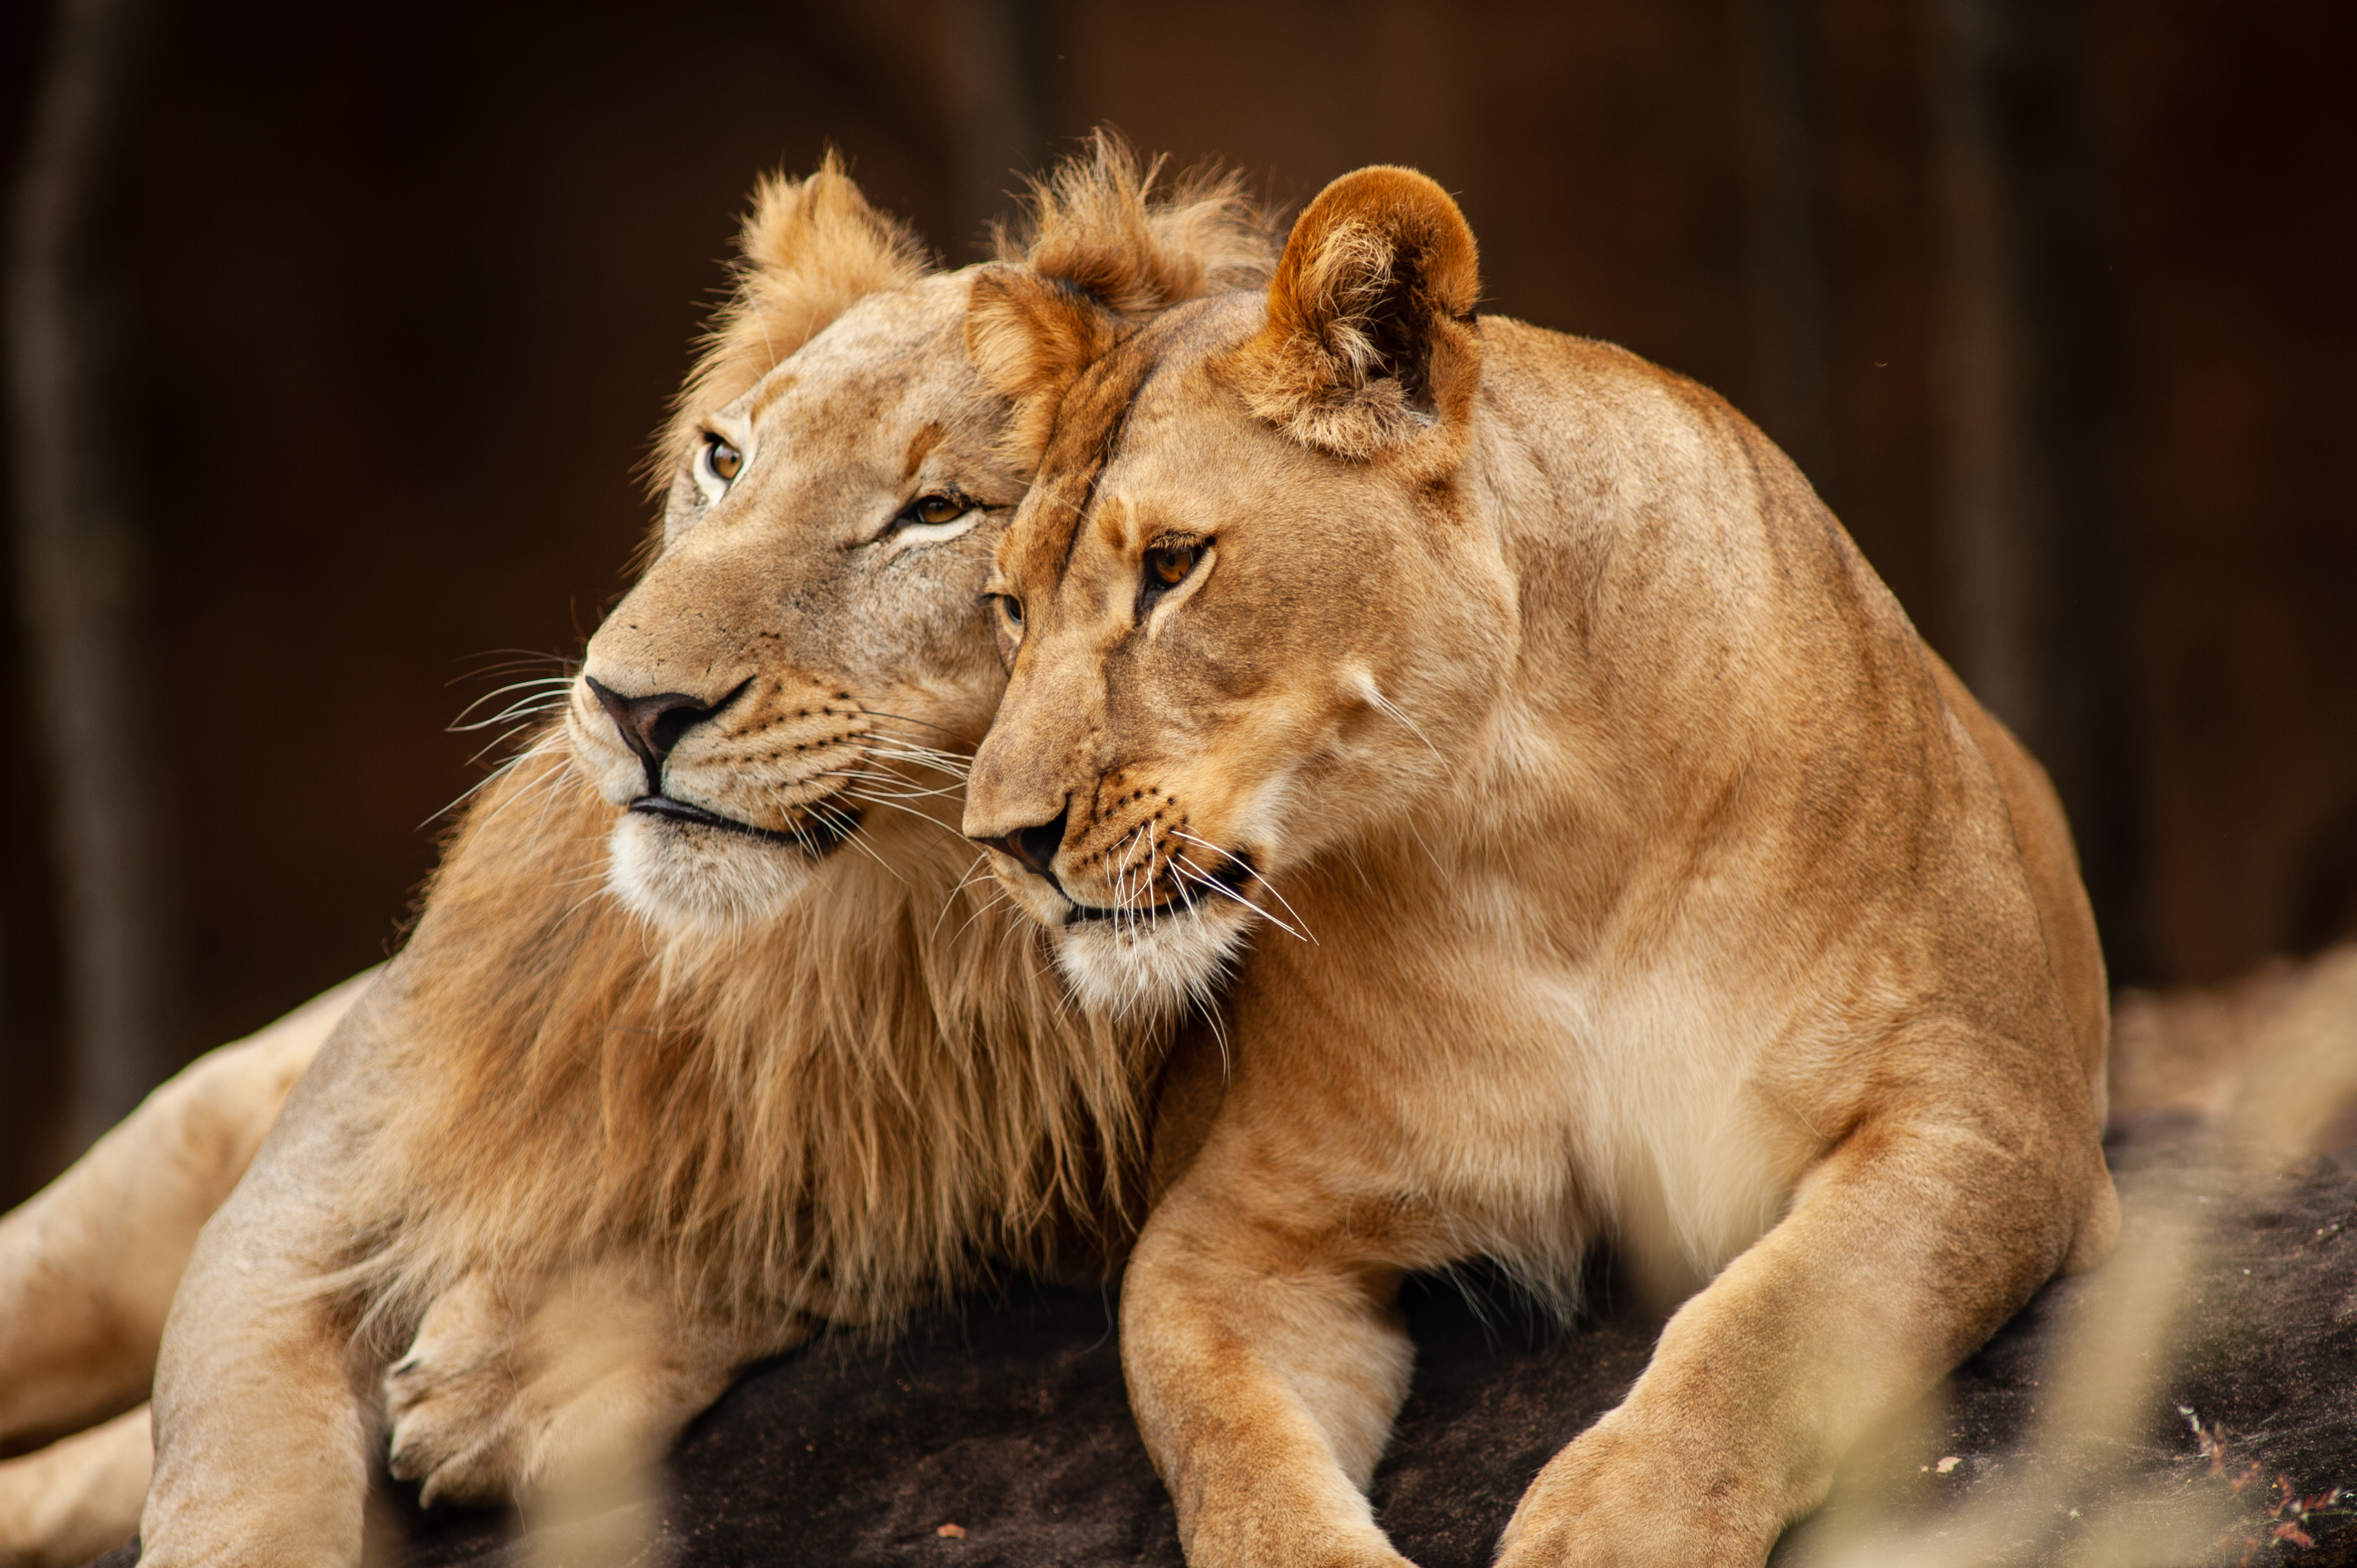 Descubren que la hormona oxitocina vuelve a los leones menos feroces -  Infobae